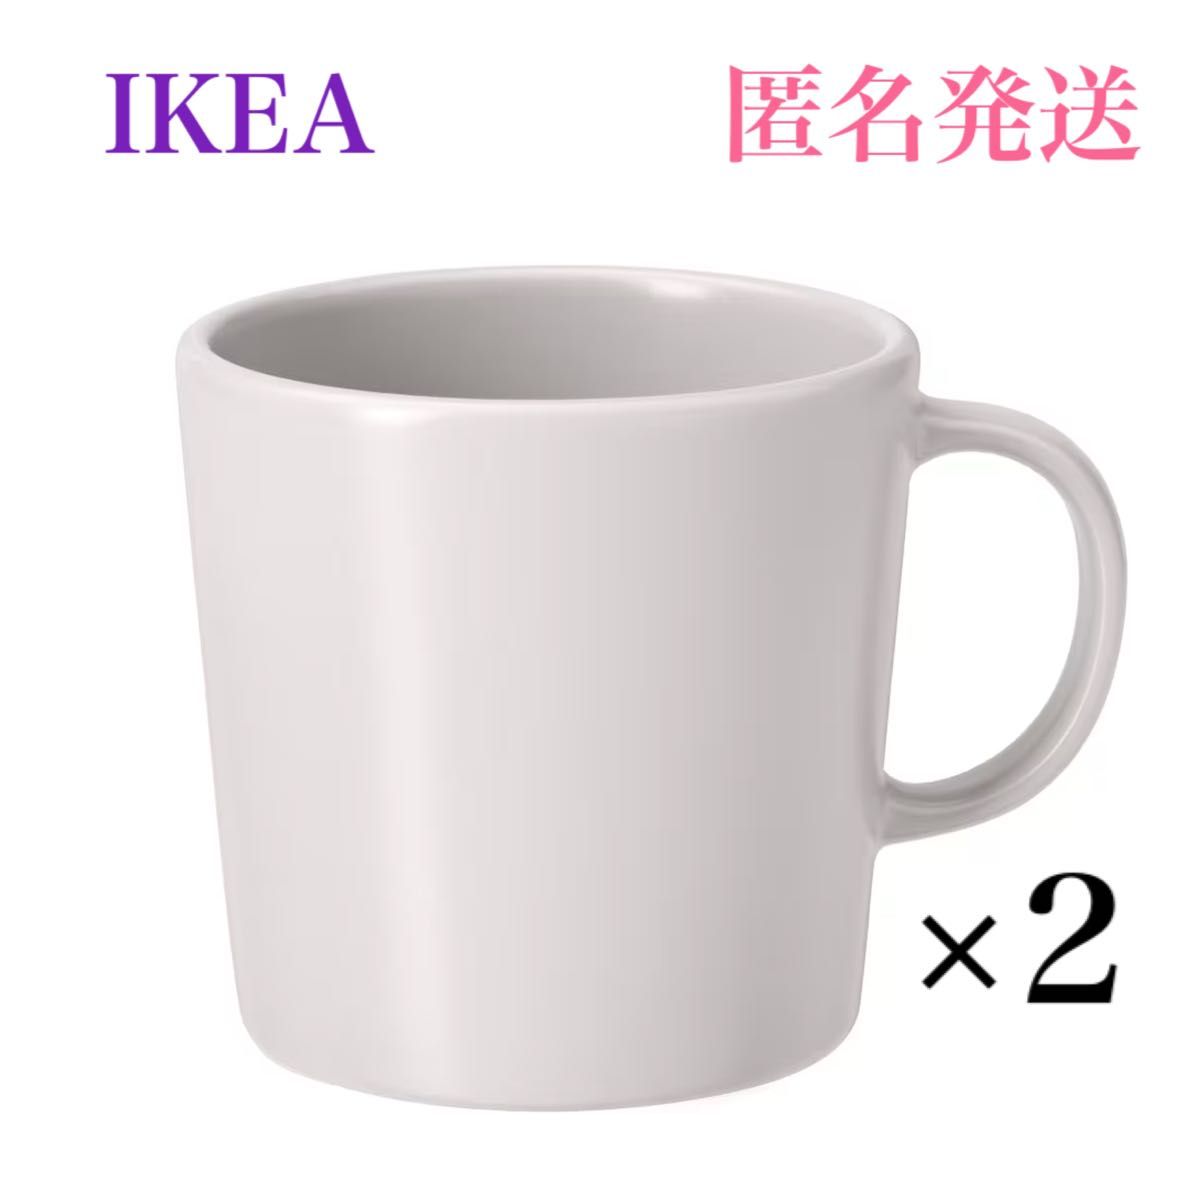 【新品・未使用】IKEA イケア DINERA ディネーラ マグカップ 2個セット ホワイト 300ml ダークグレーもあります。